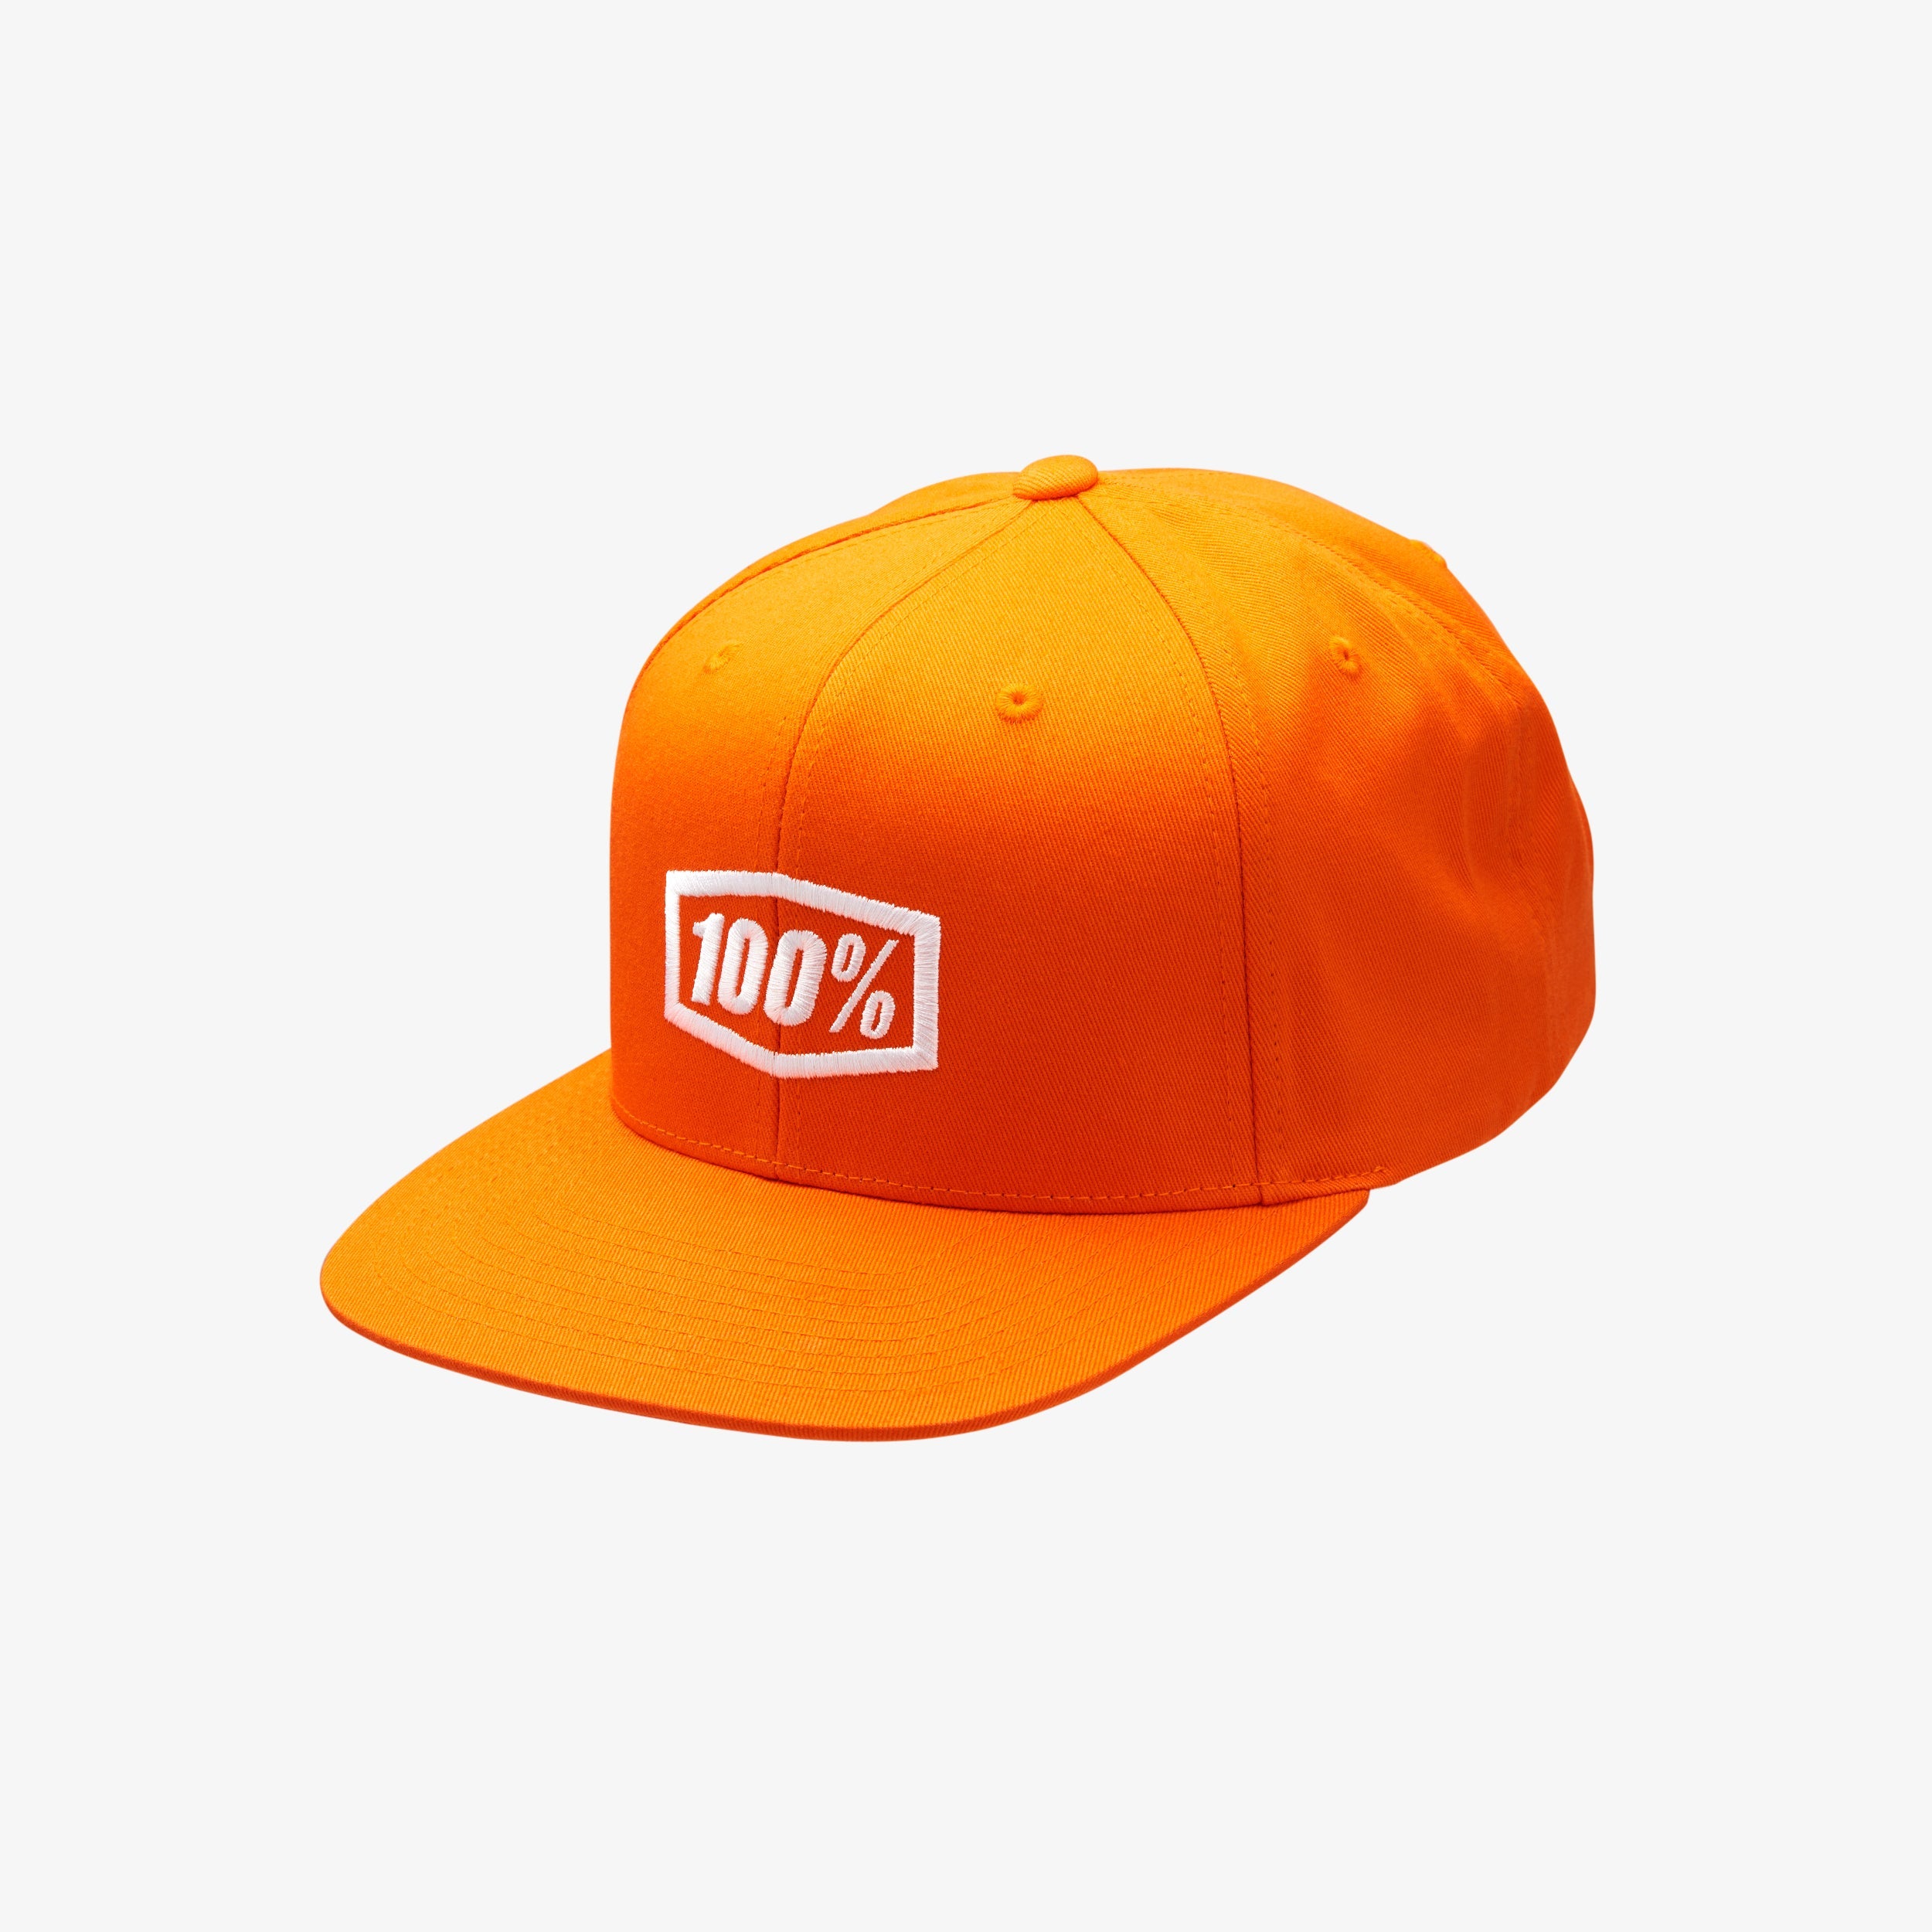 ICON Youth Snapback Cap Orange - OS